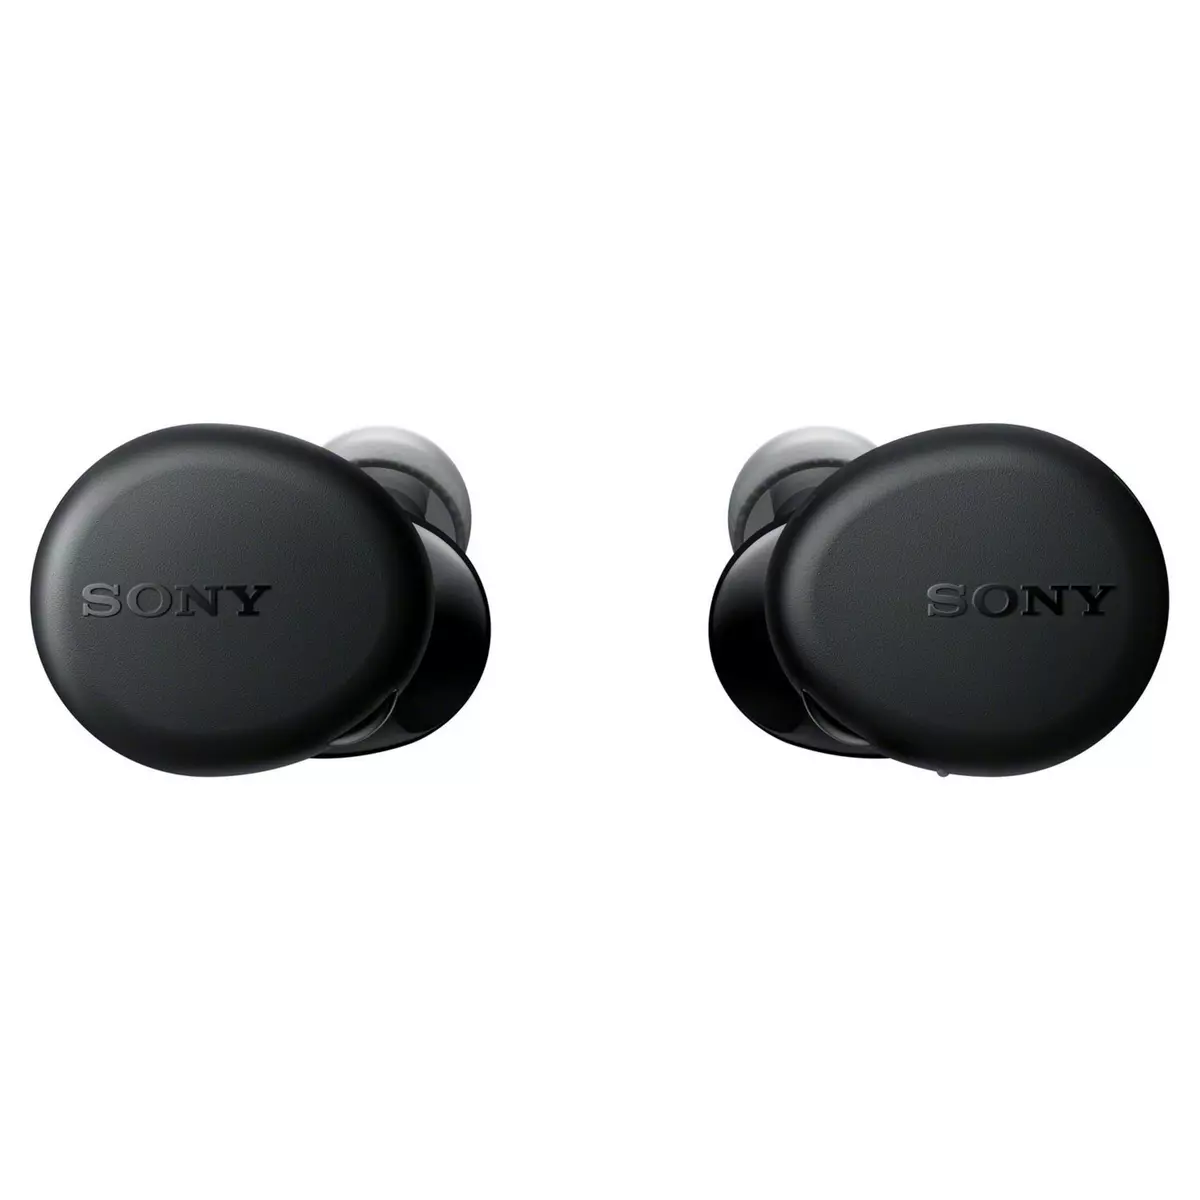 SONY Écouteurs sans fil Bluetooth avec étui de recharge - Noir - WFXB700B  pas cher 